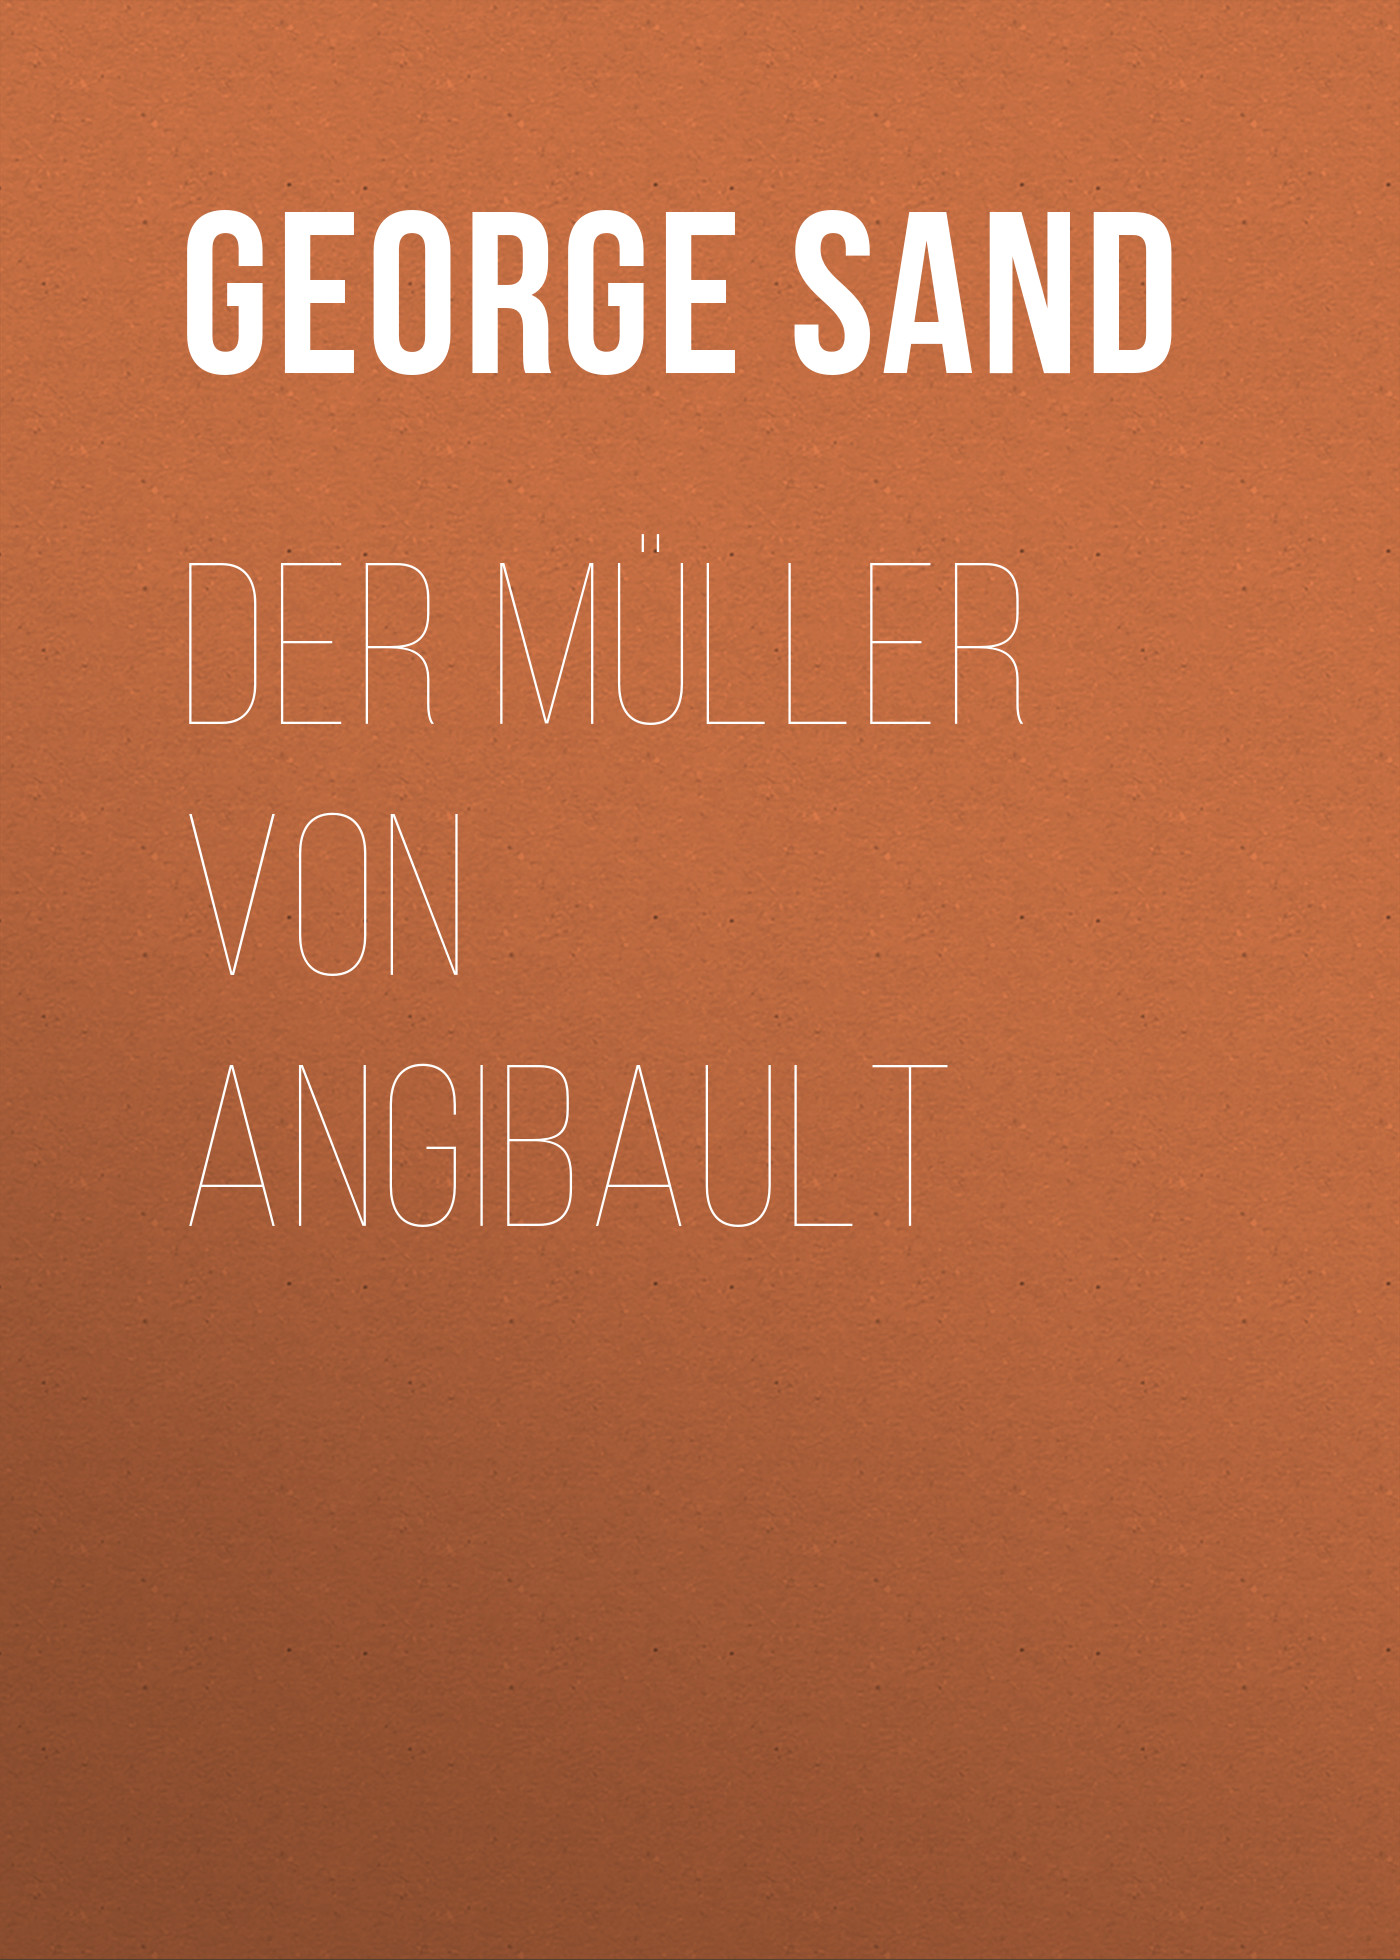 Книга Der Müller von Angibault из серии , созданная George Sand, может относится к жанру Зарубежная классика. Стоимость электронной книги Der Müller von Angibault с идентификатором 48633324 составляет 0 руб.